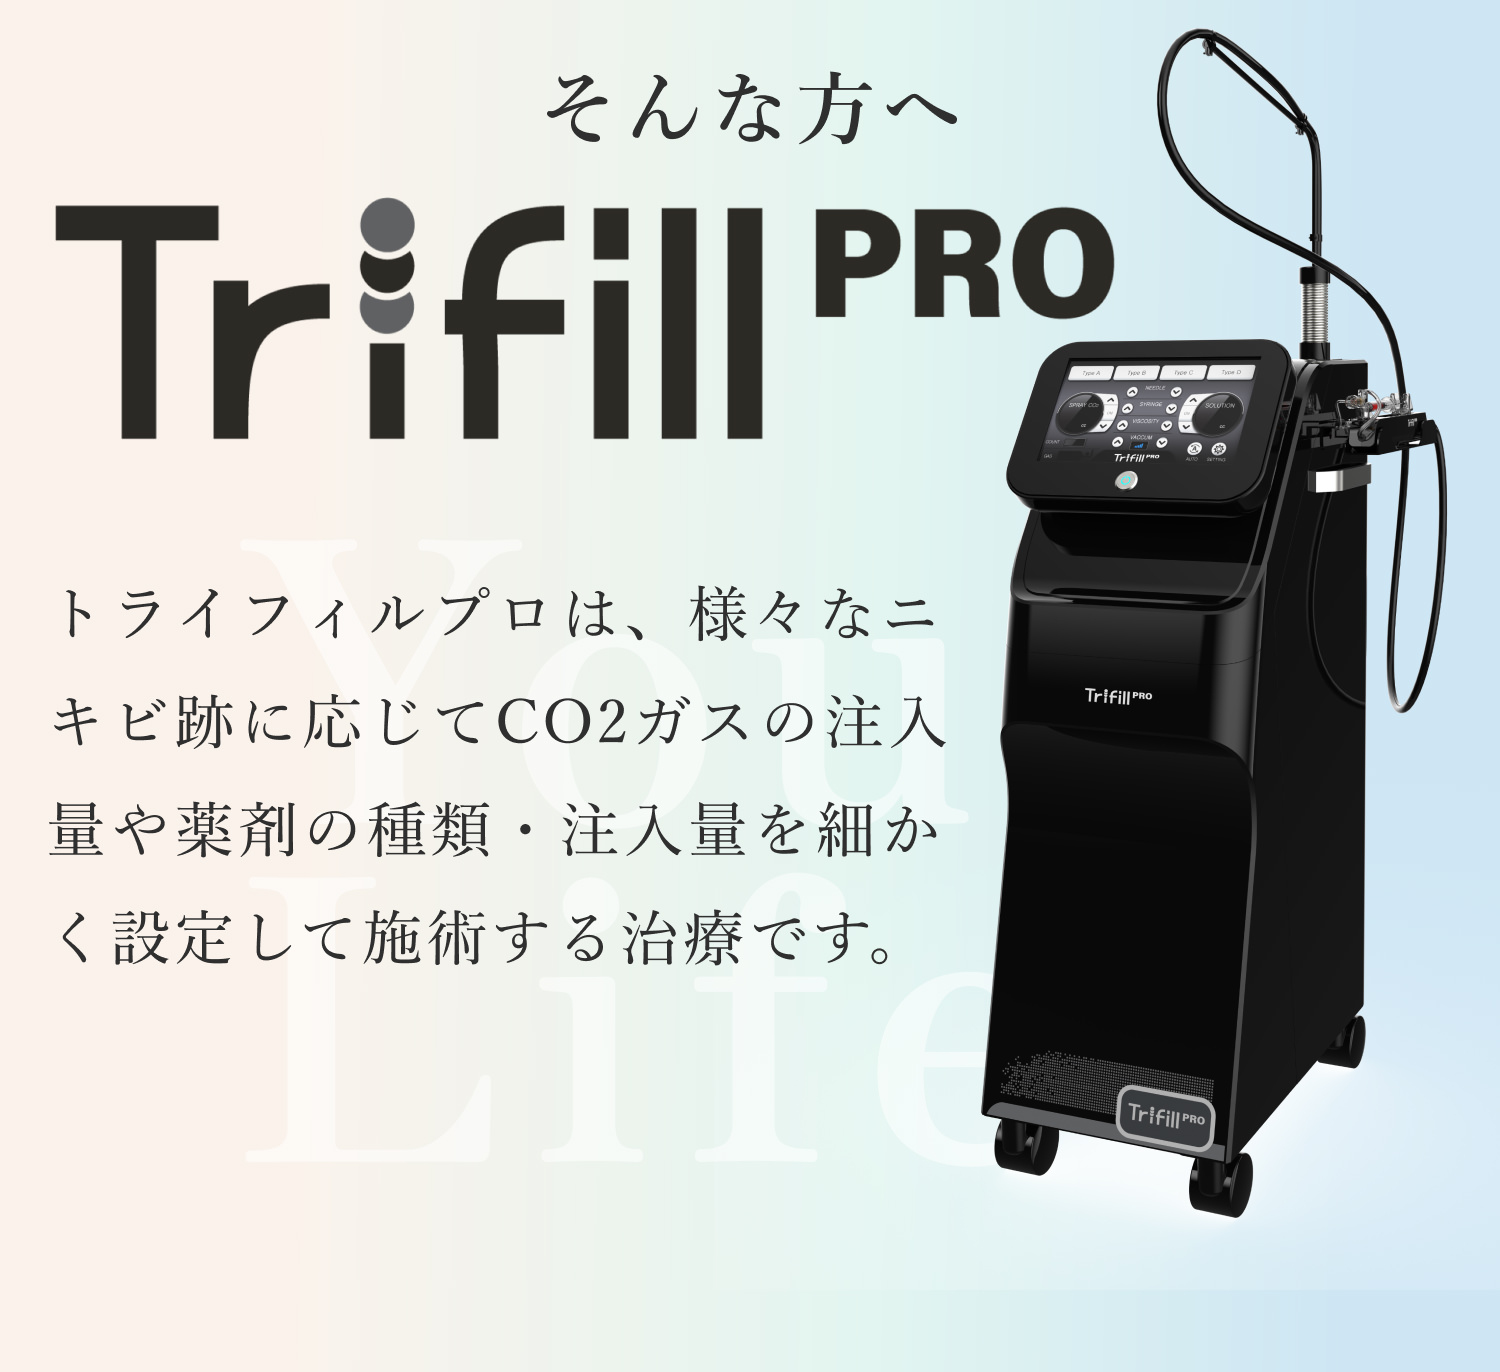 そんな方へ Trifill PRP トライフィルプロは、様々なニキビ跡に応じてCO2ガスの注入量や薬剤の種類・注入量を細かく設定して施術する治療です。 Your Life